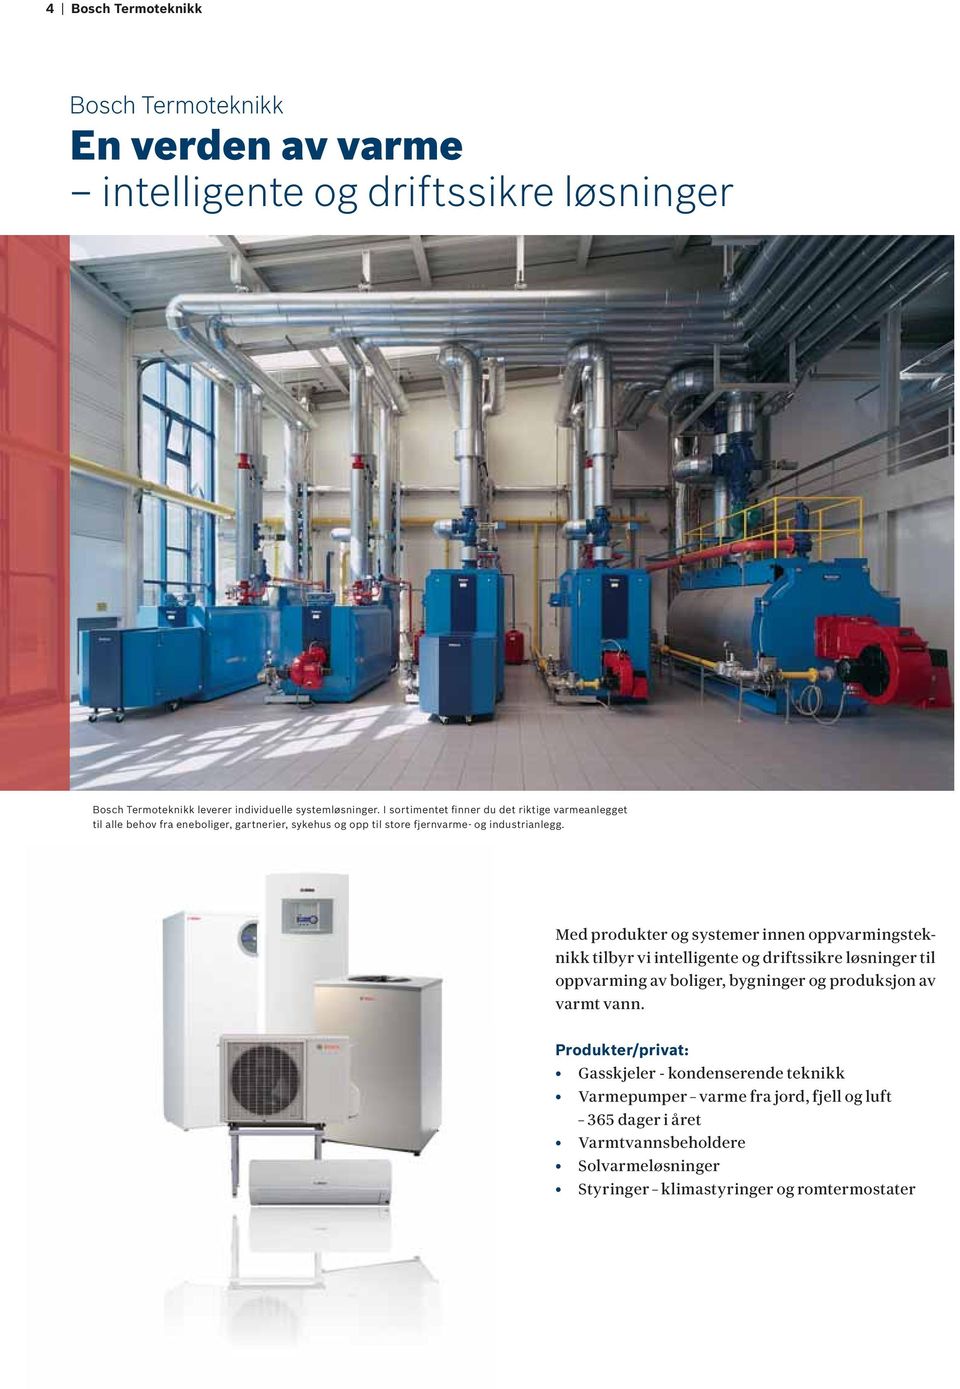 Med produkter og systemer innen oppvarmingsteknikk tilbyr vi intelligente og driftssikre løsninger til oppvarming av boliger, bygninger og produksjon av varmt vann.